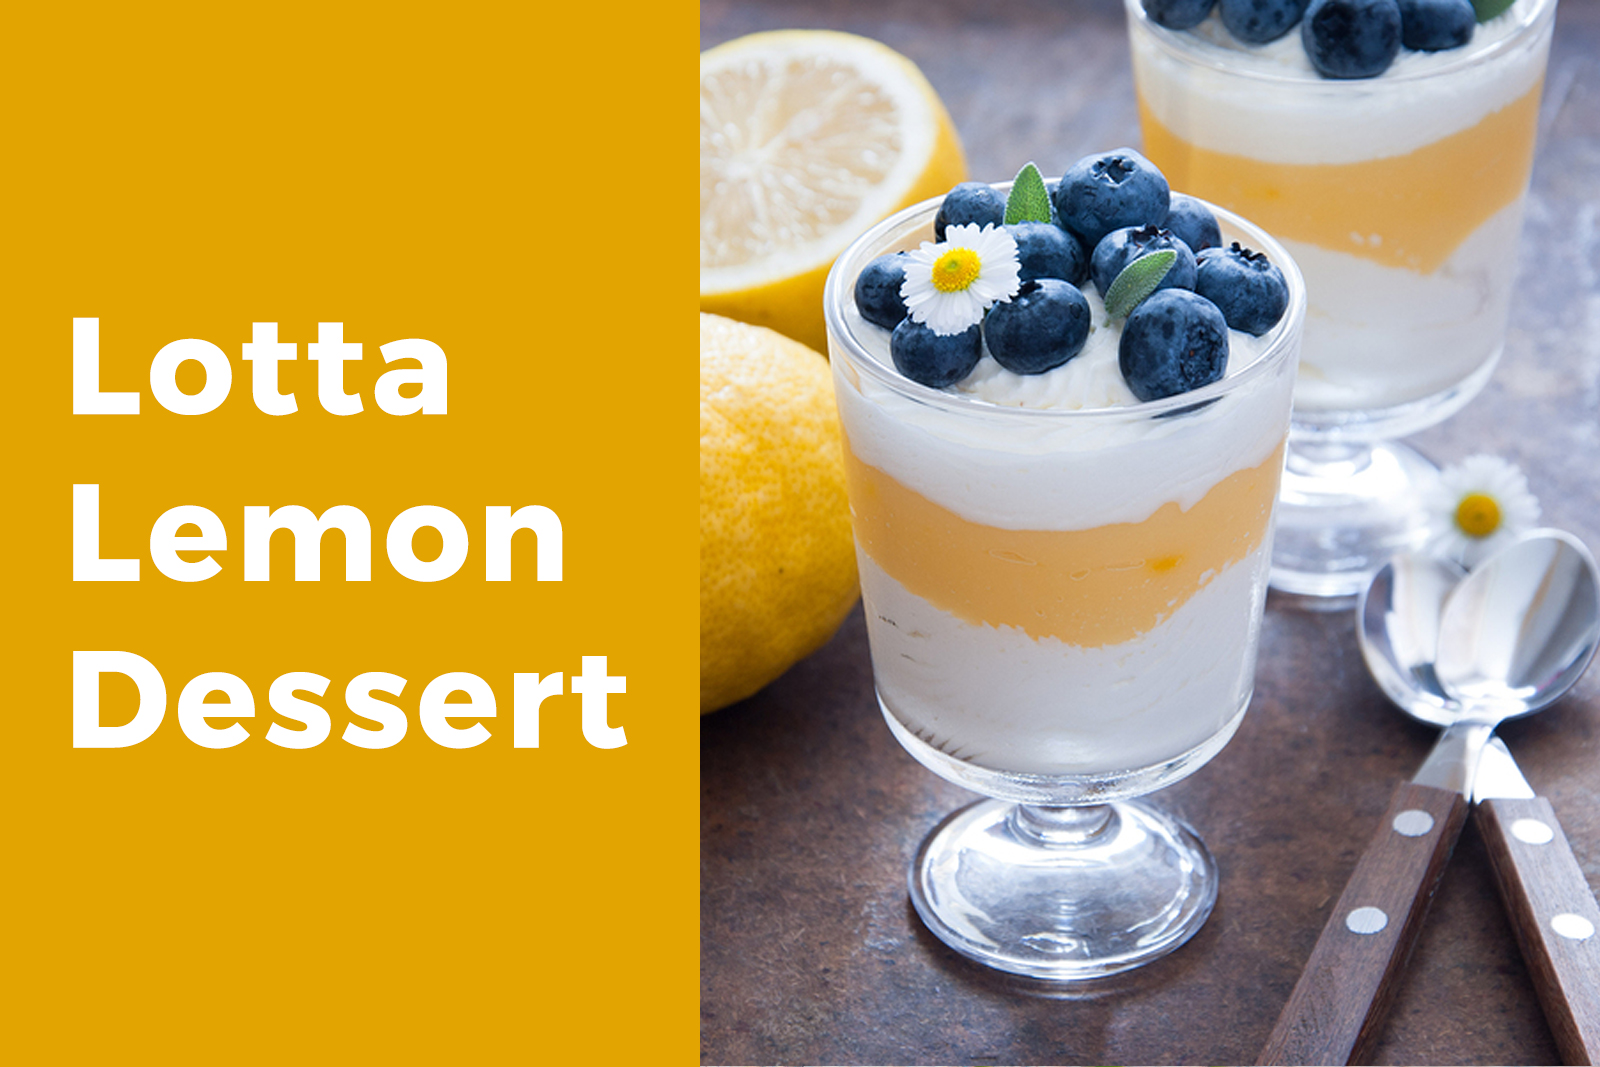 Lotta Lemon Dessert